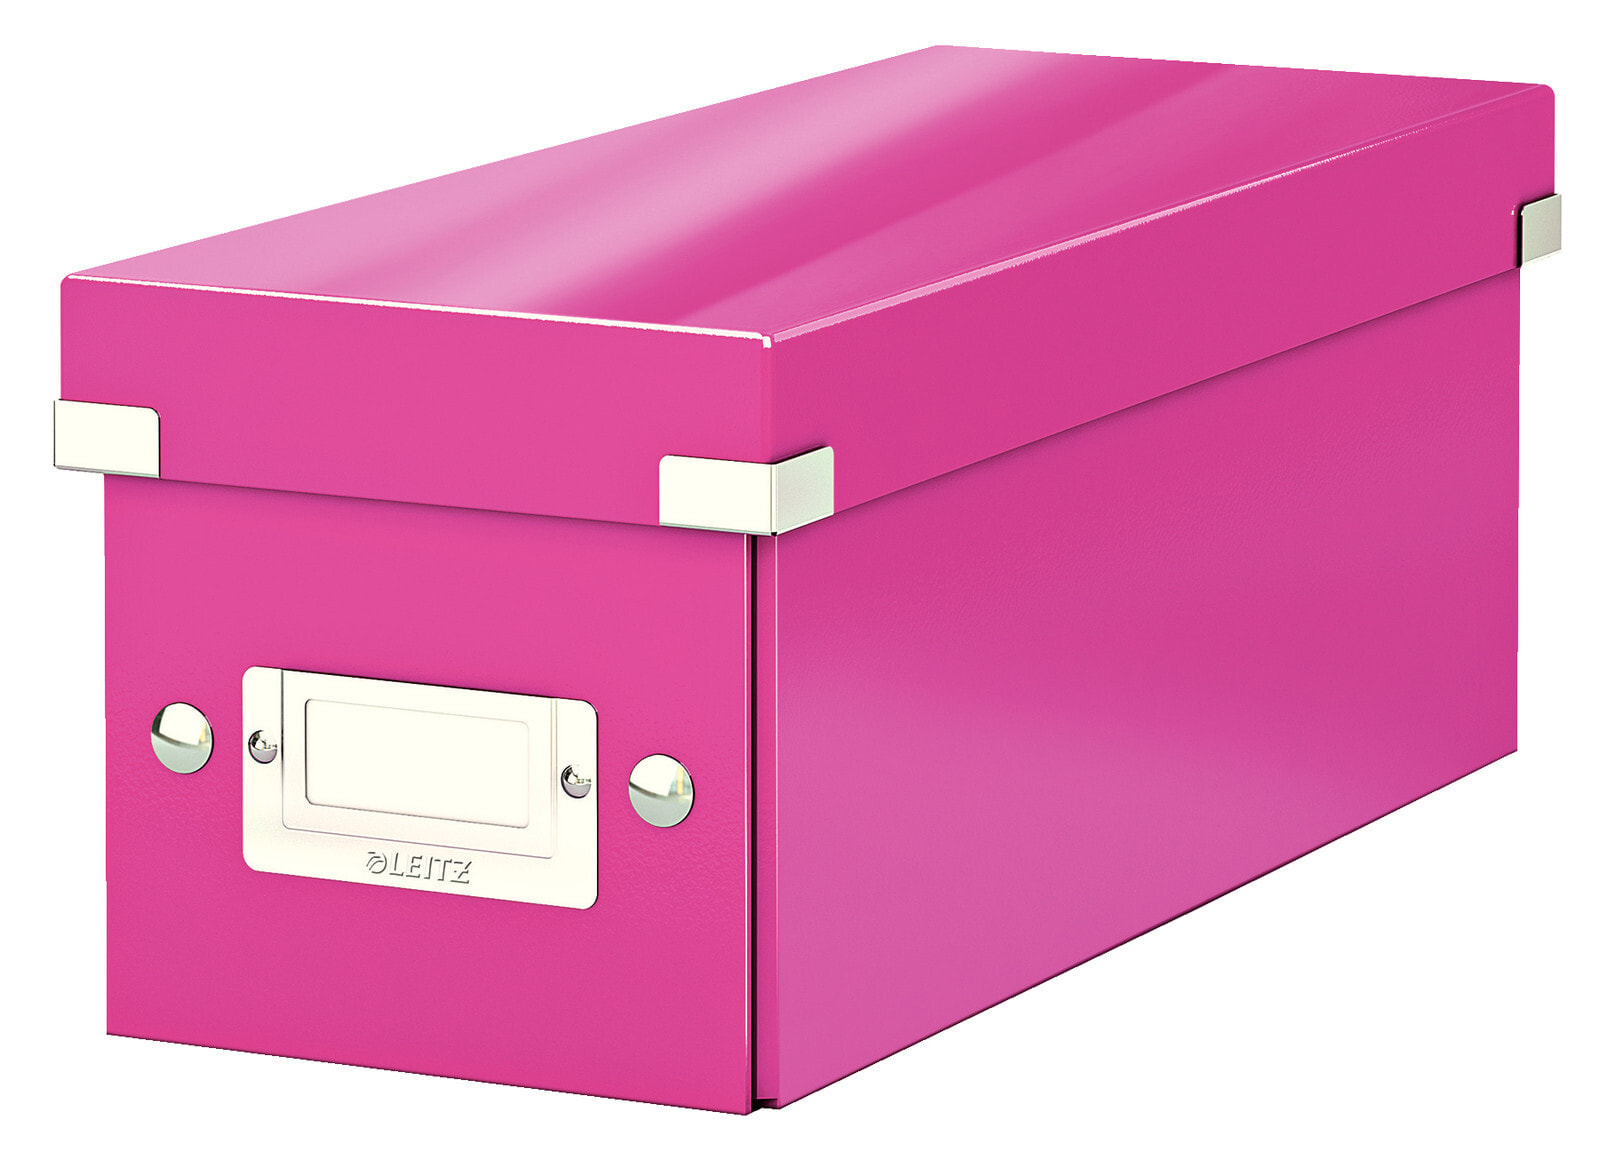 Leitz 60410023 коробка для хранения оптических дисков 160 диск (ов) Розовый Картон, ДВП